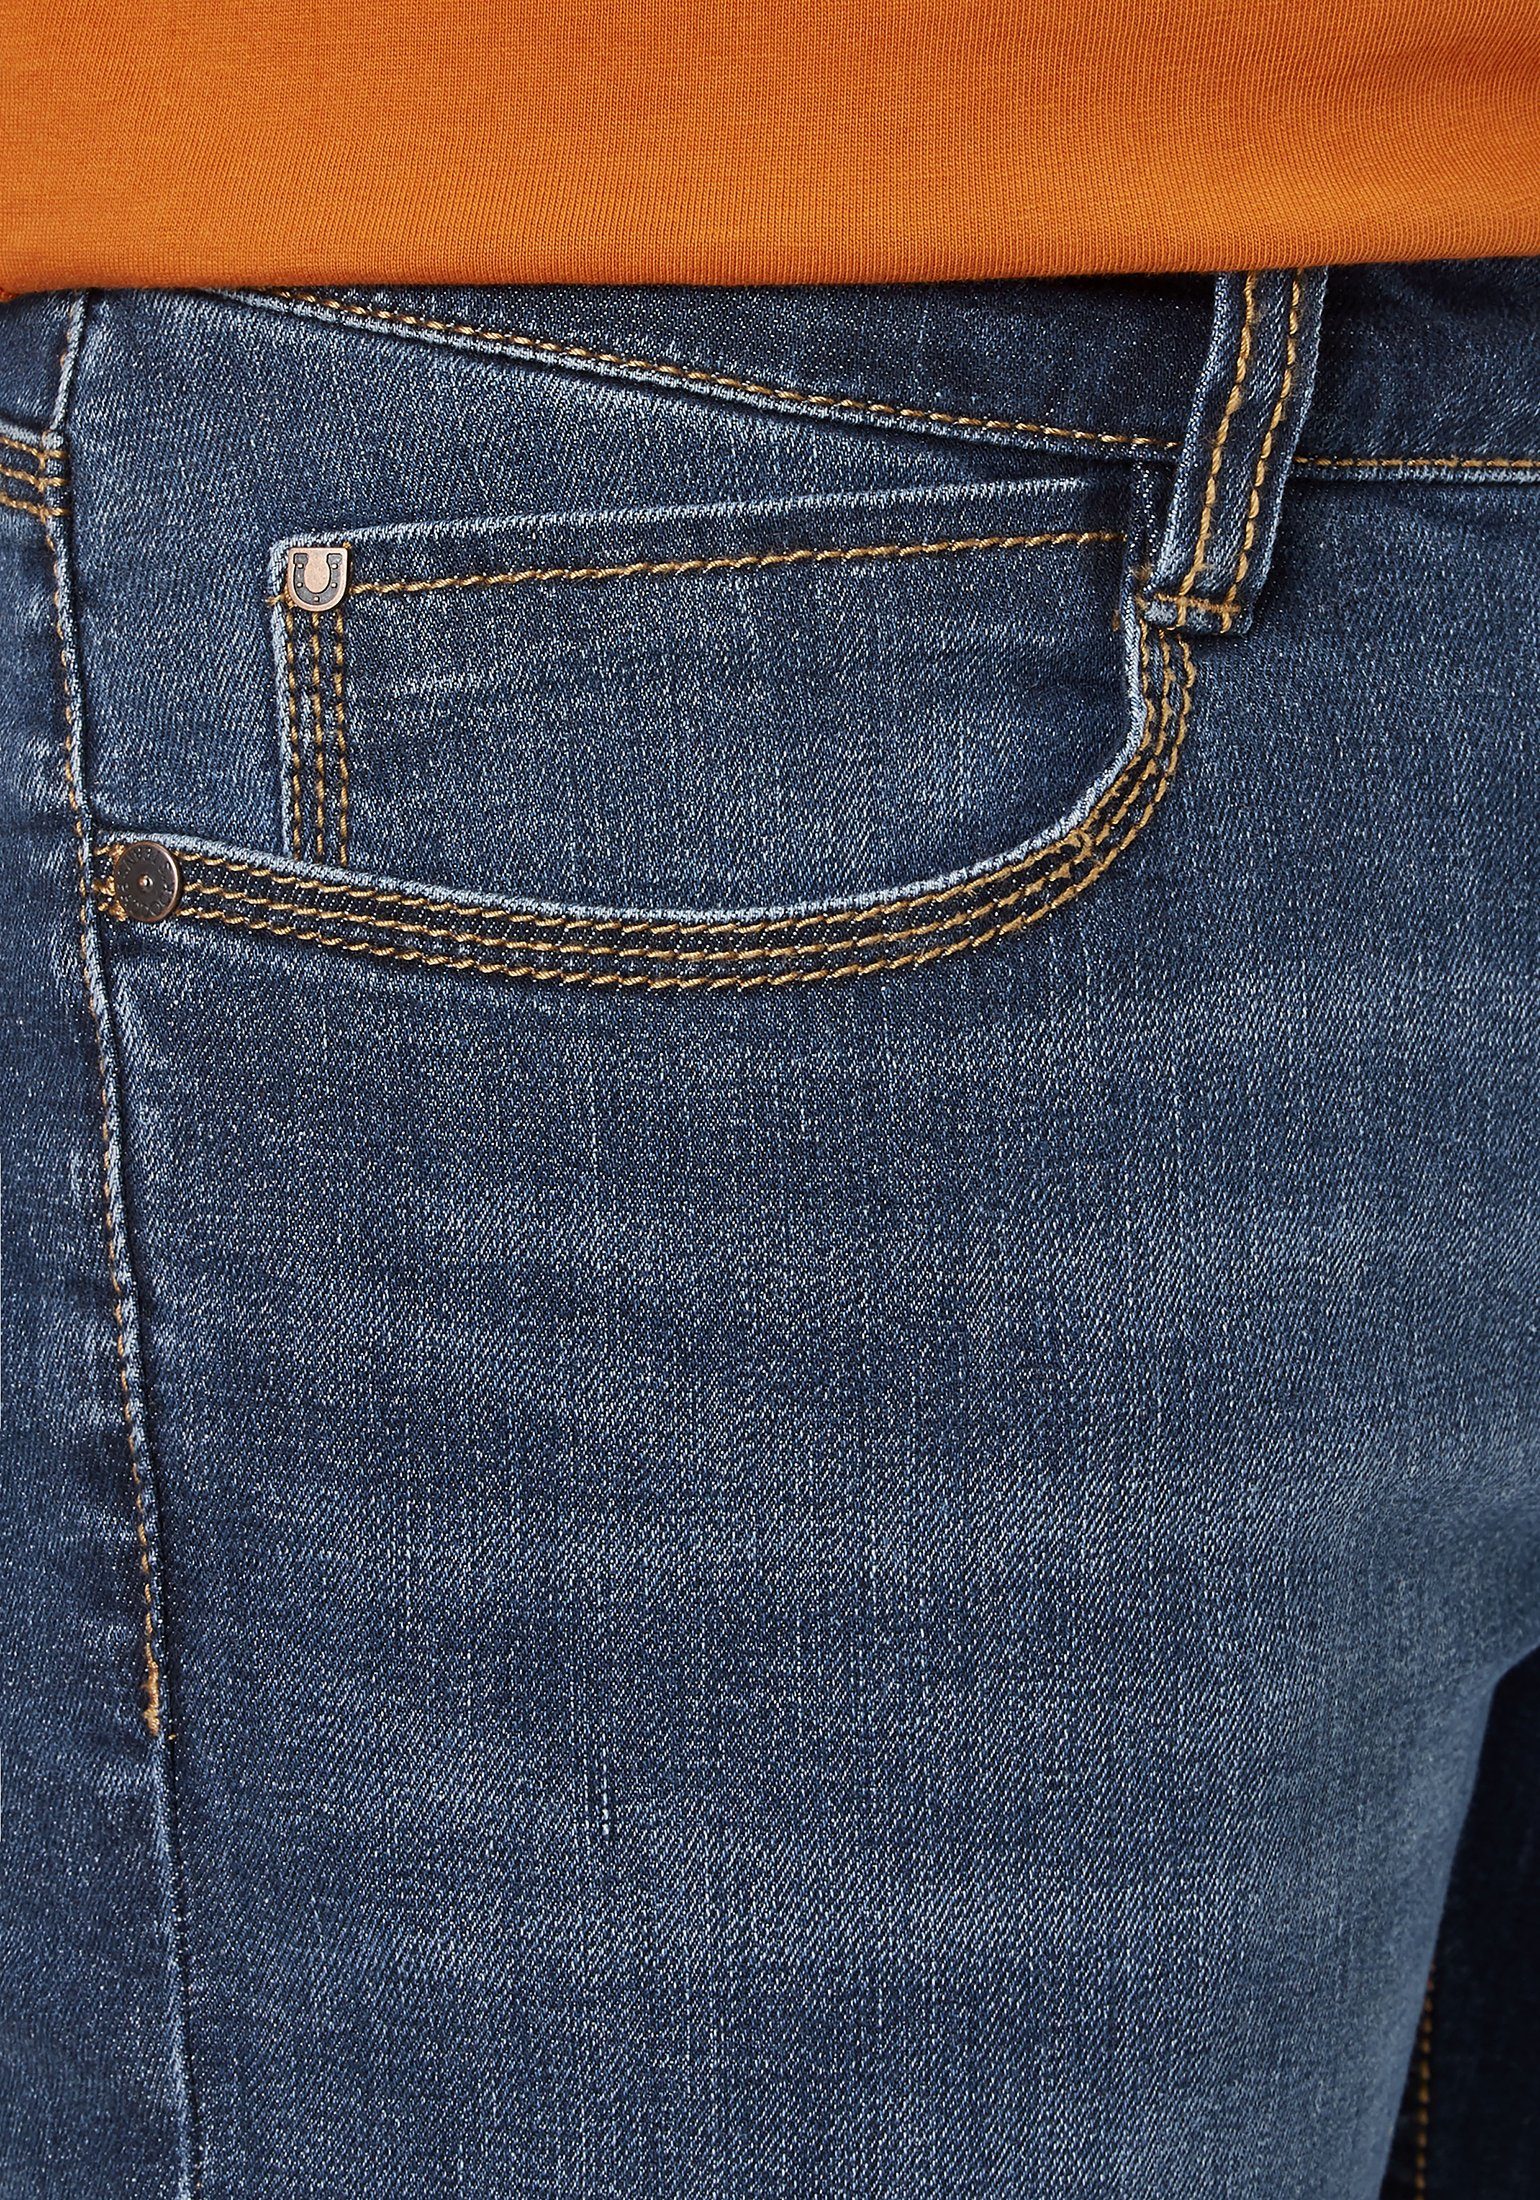 Jeans Paddock's 5-Pocket-Jeans Slim-Fit DEAN moderne medium blue Denim